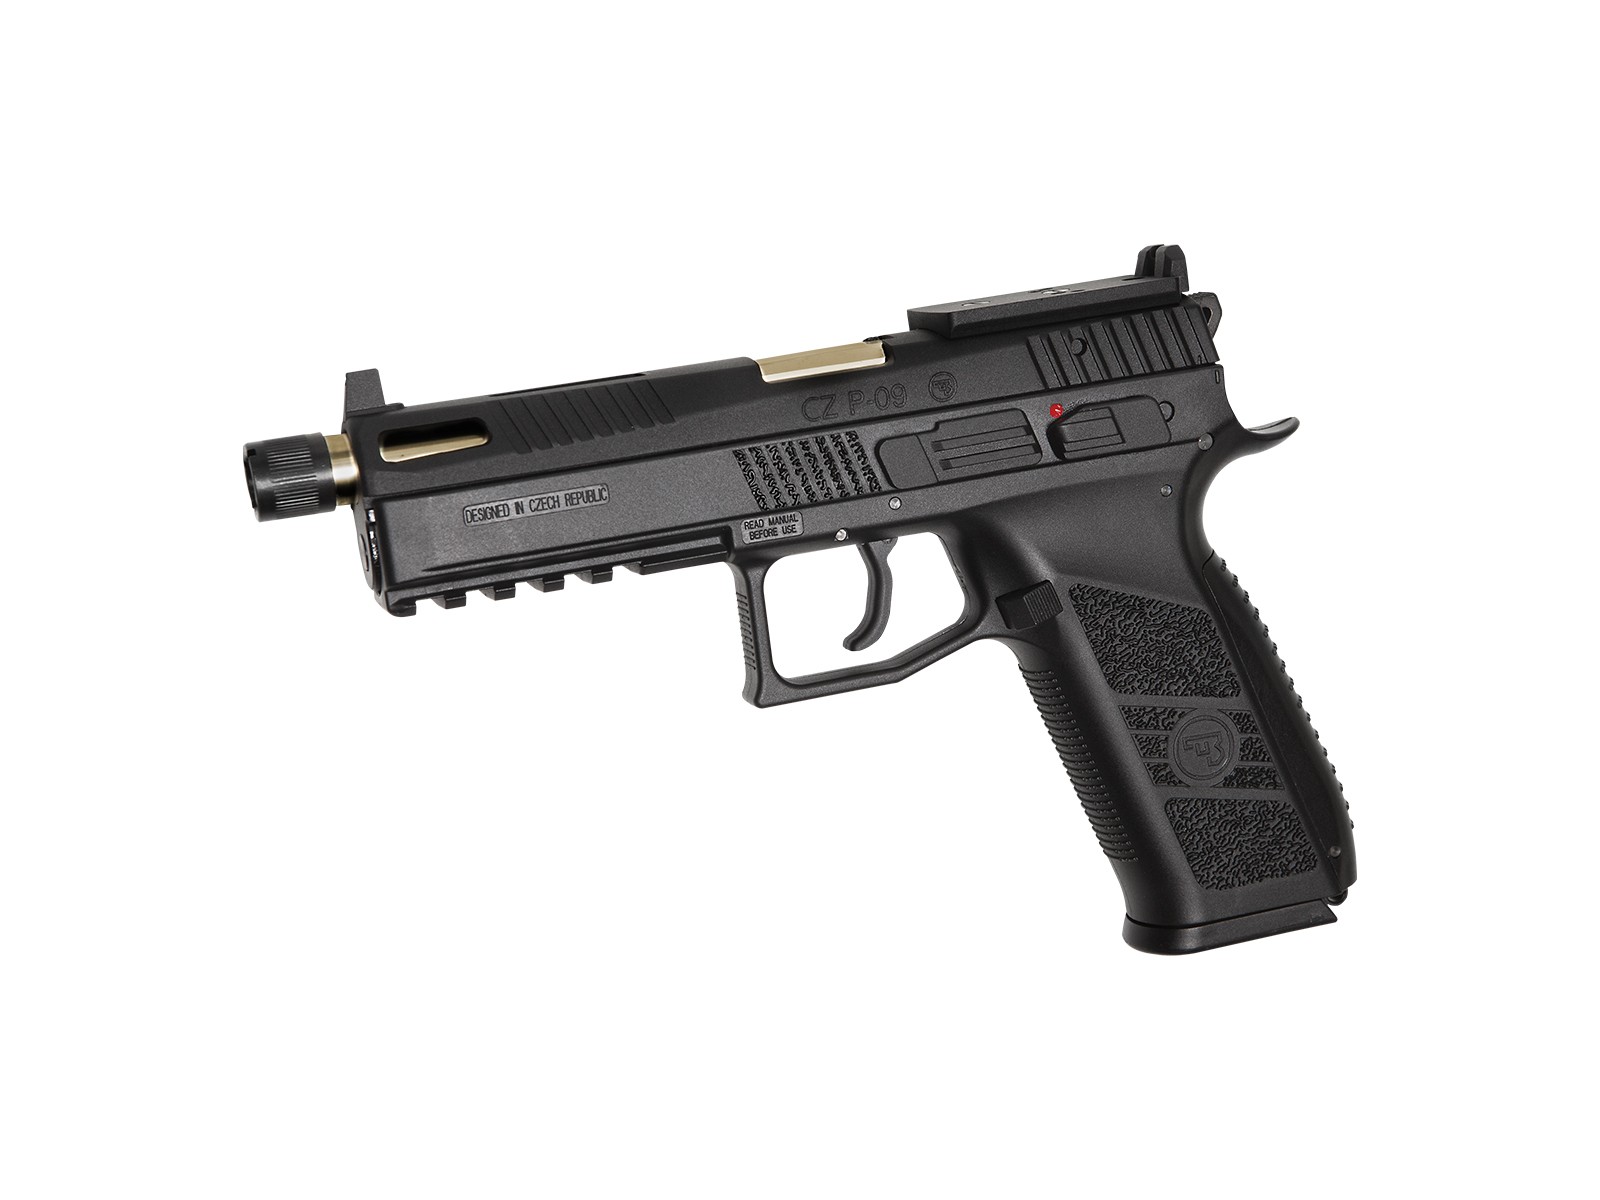 ASG - pistolet Automatique CZ P-09 GBB - CO2 - Gold et noir - (1 Joules)